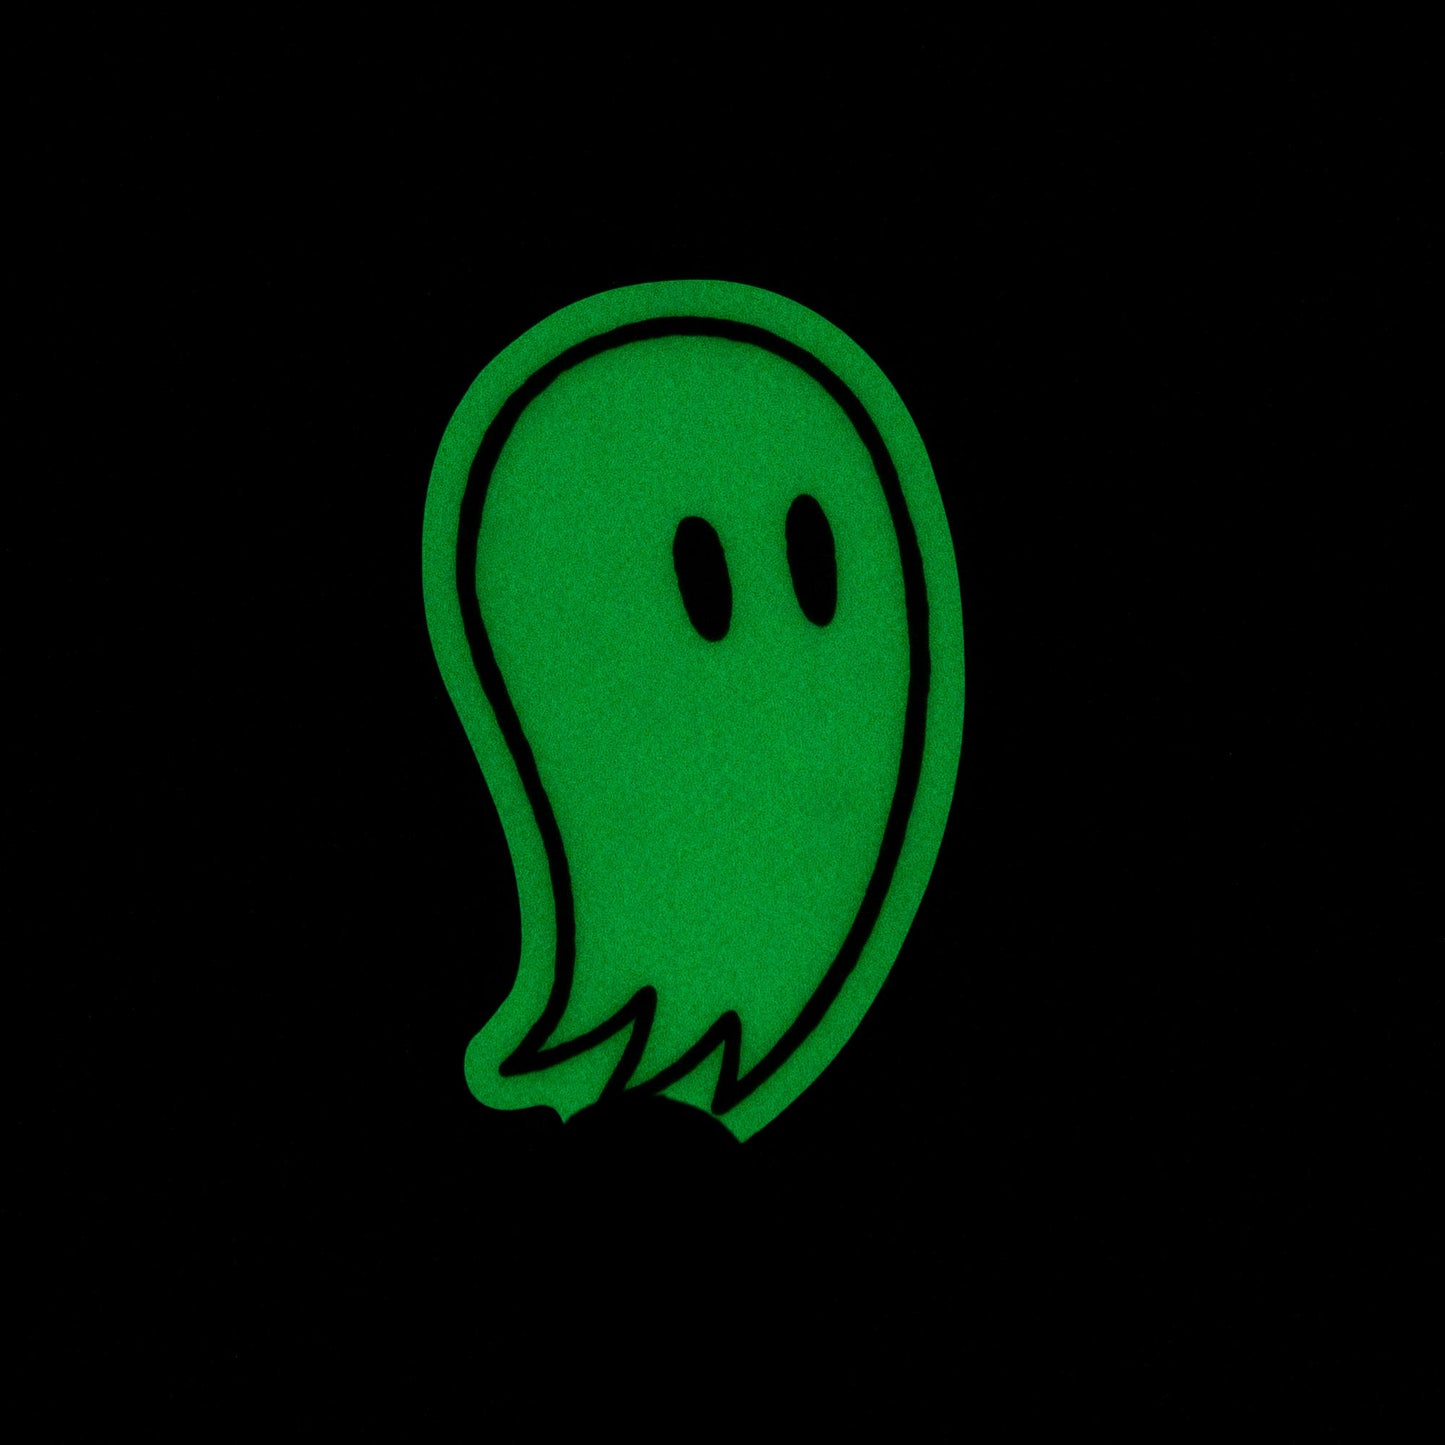 Ghosts | Sticker Pack